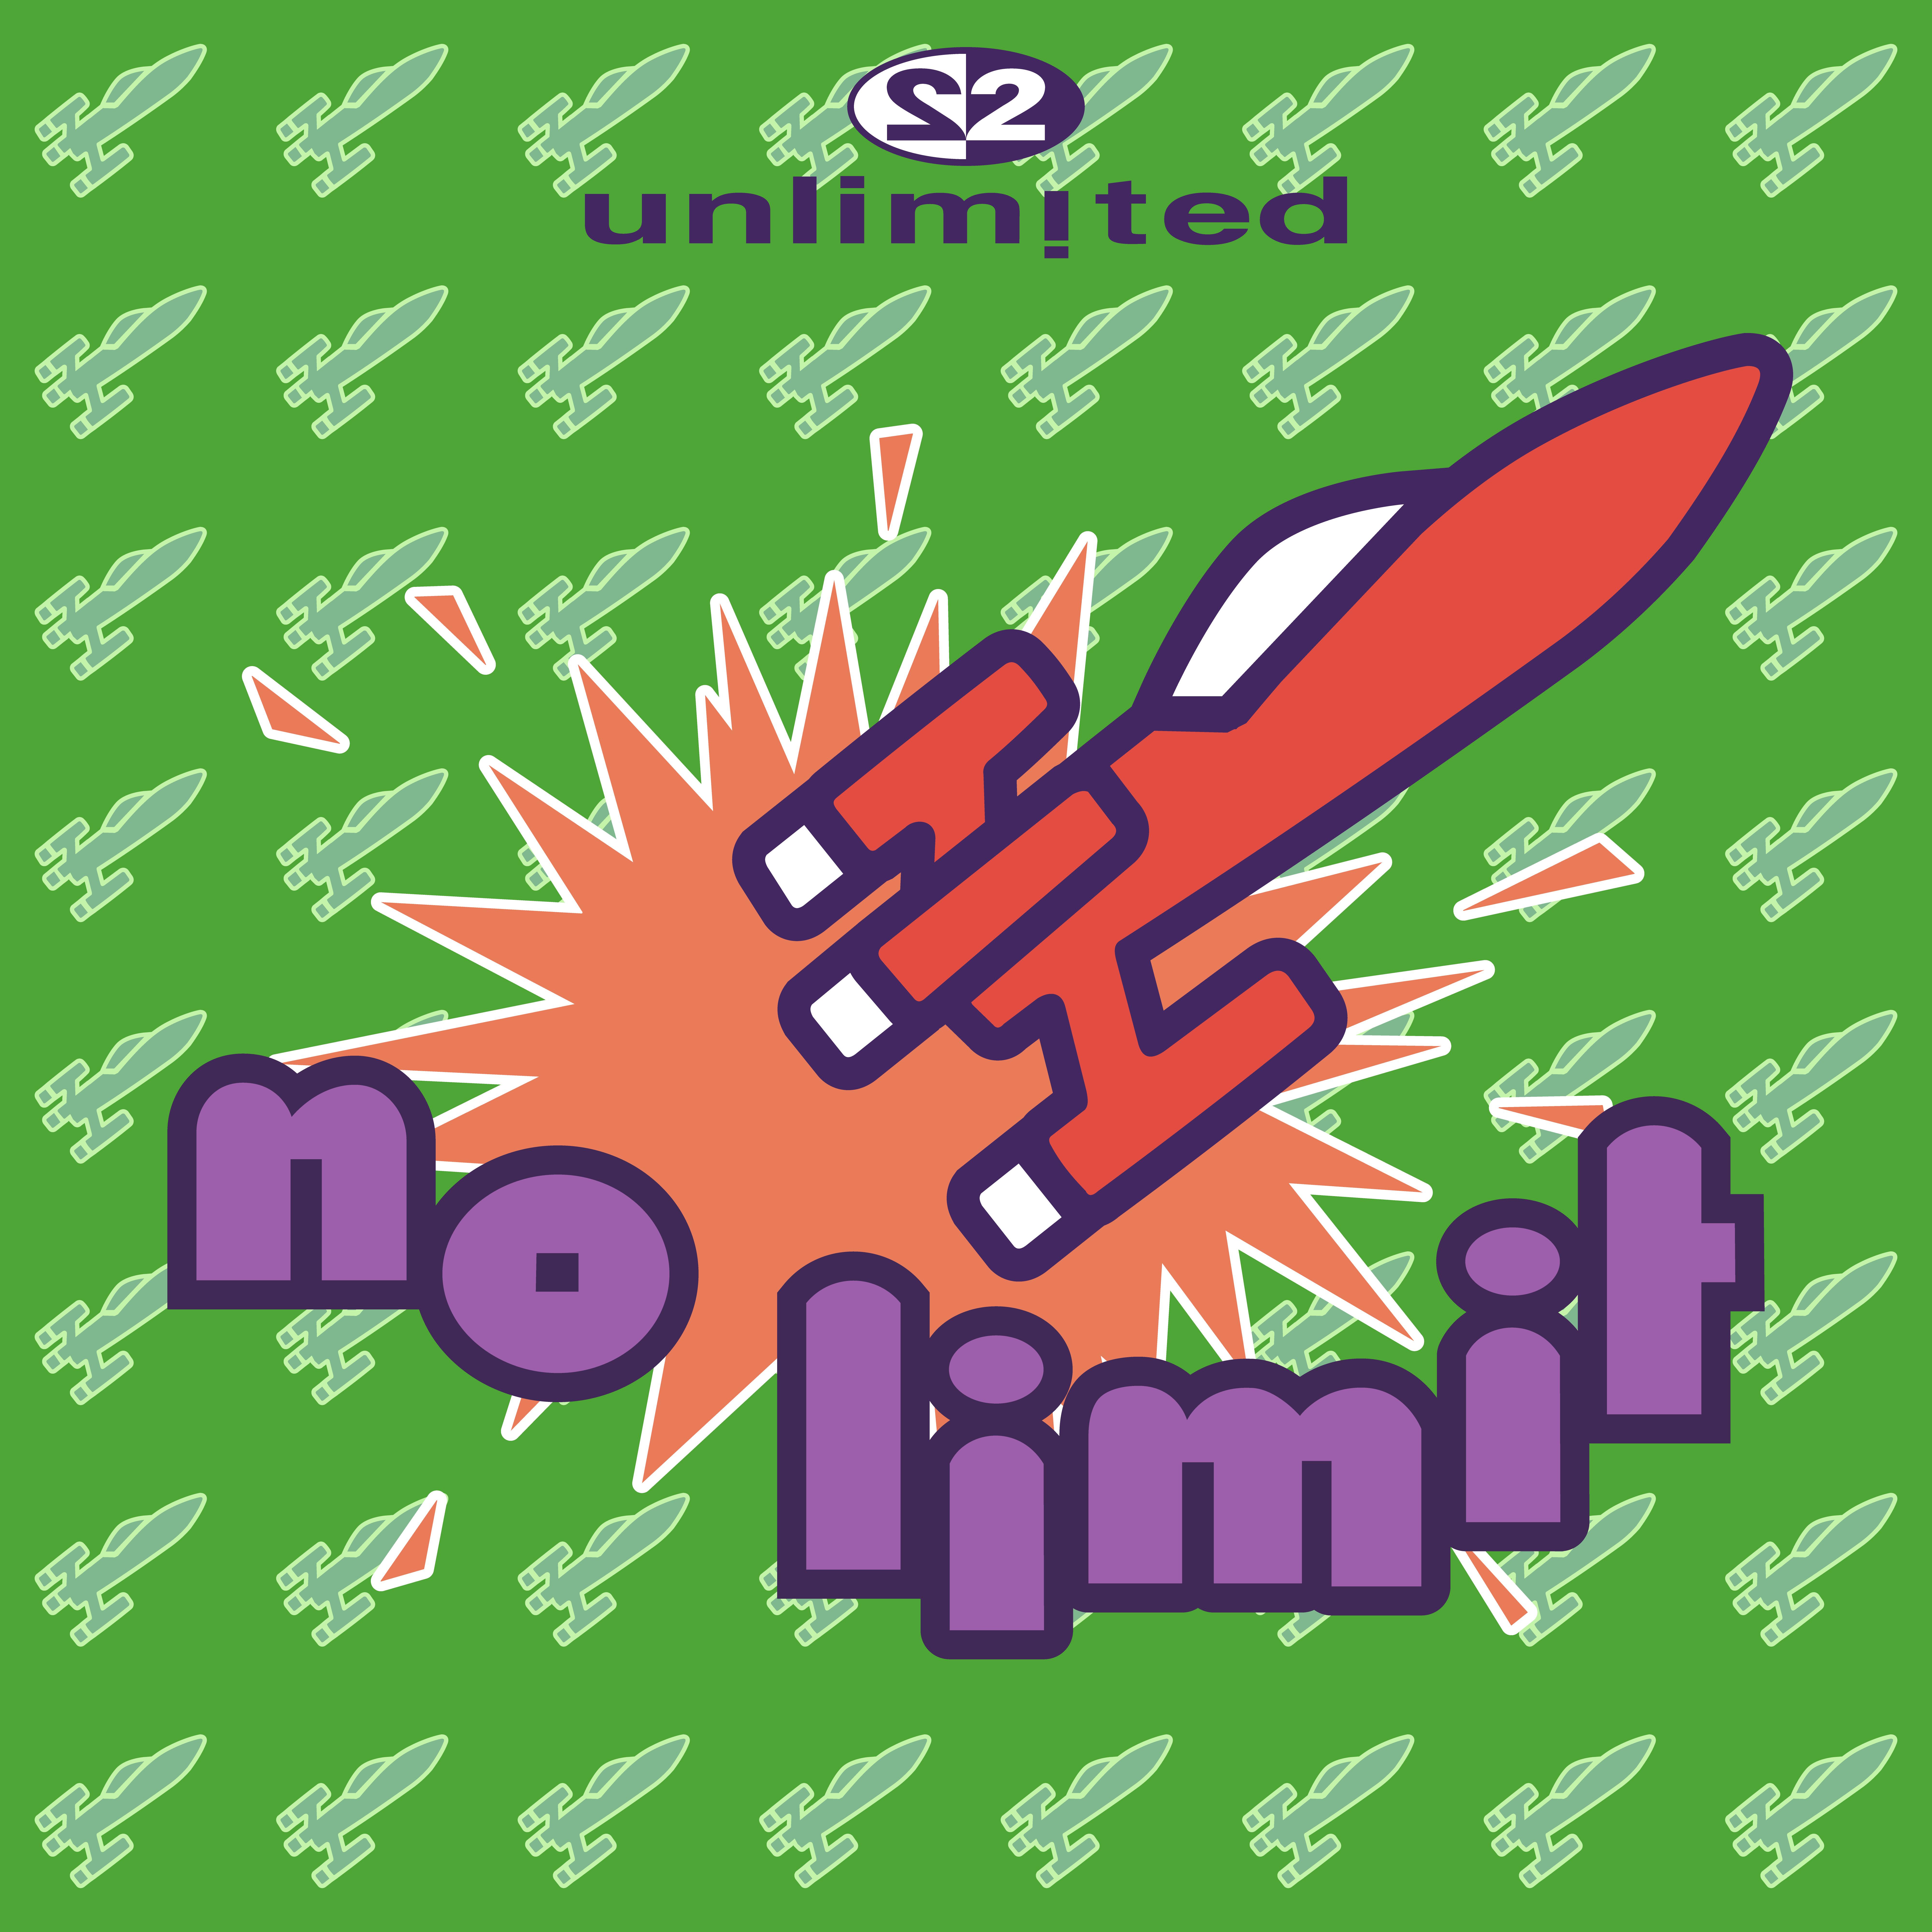 2 Unlimited - No Limit (Automatic Remix)